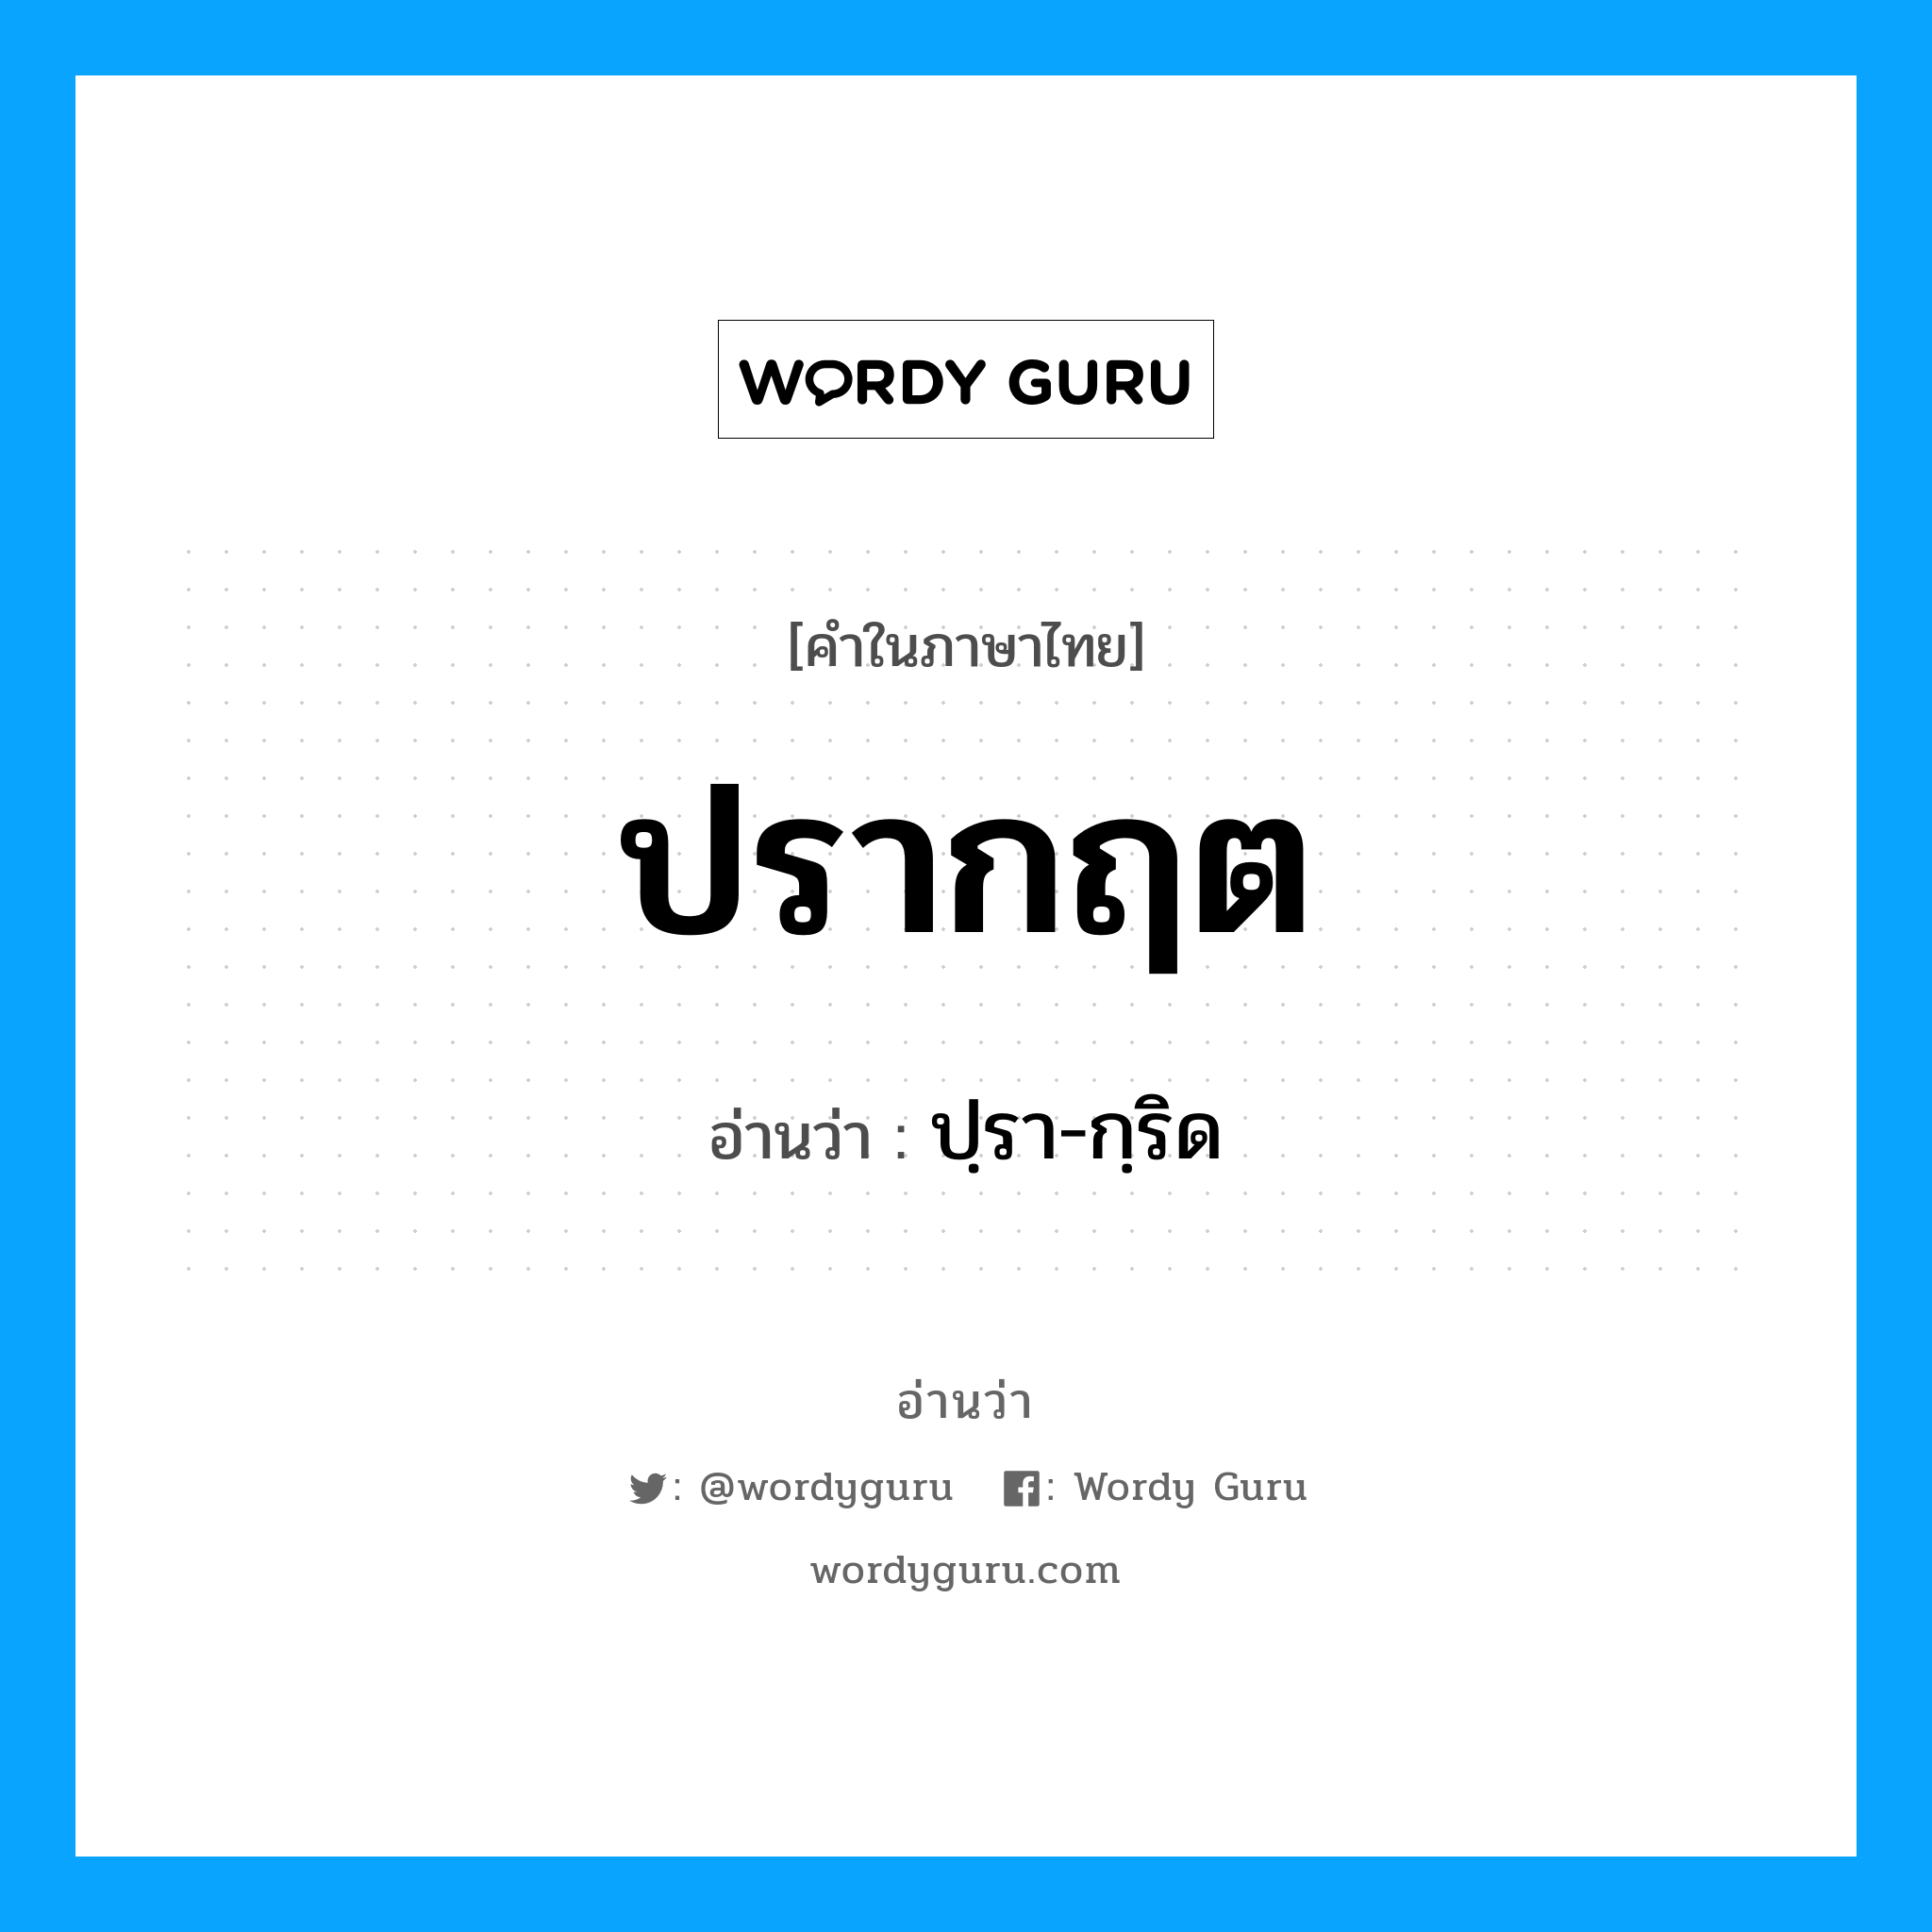 ปฺรา-กฺริด เป็นคำอ่านของคำไหน?, คำในภาษาไทย ปฺรา-กฺริด อ่านว่า ปรากฤต